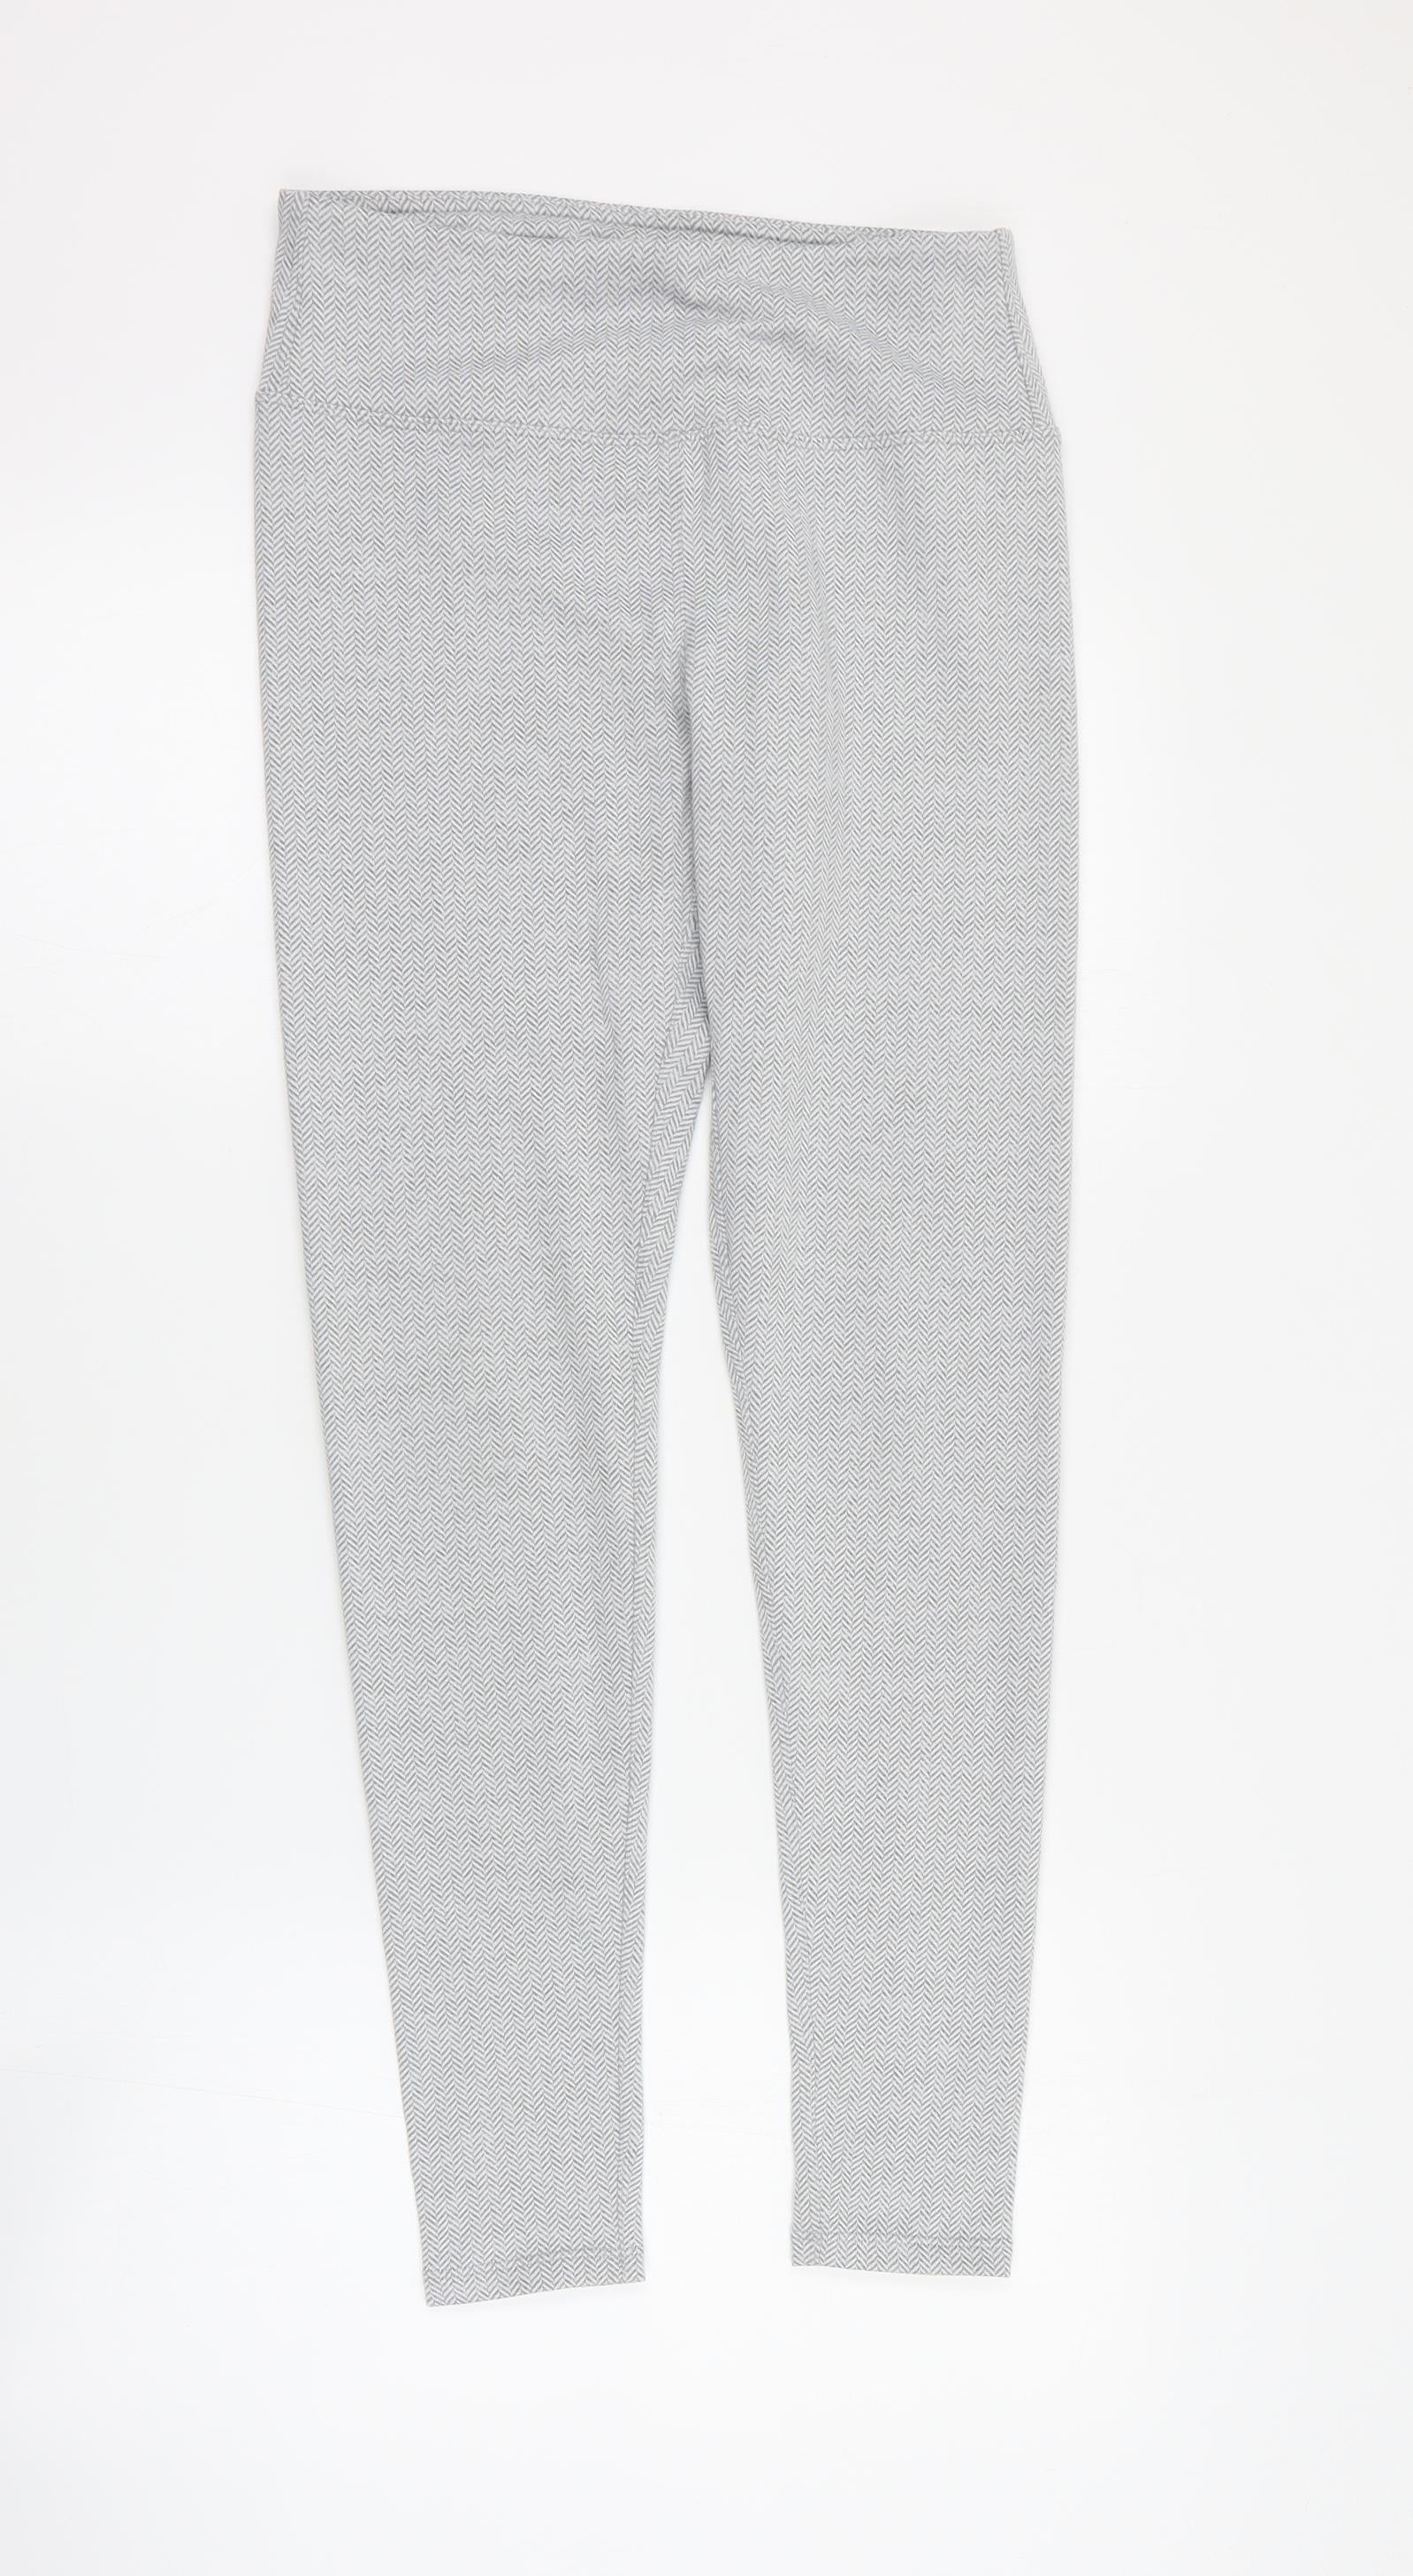 Kyodan Womens Grey Geometric Polyester Cropped Leggings Size S L28